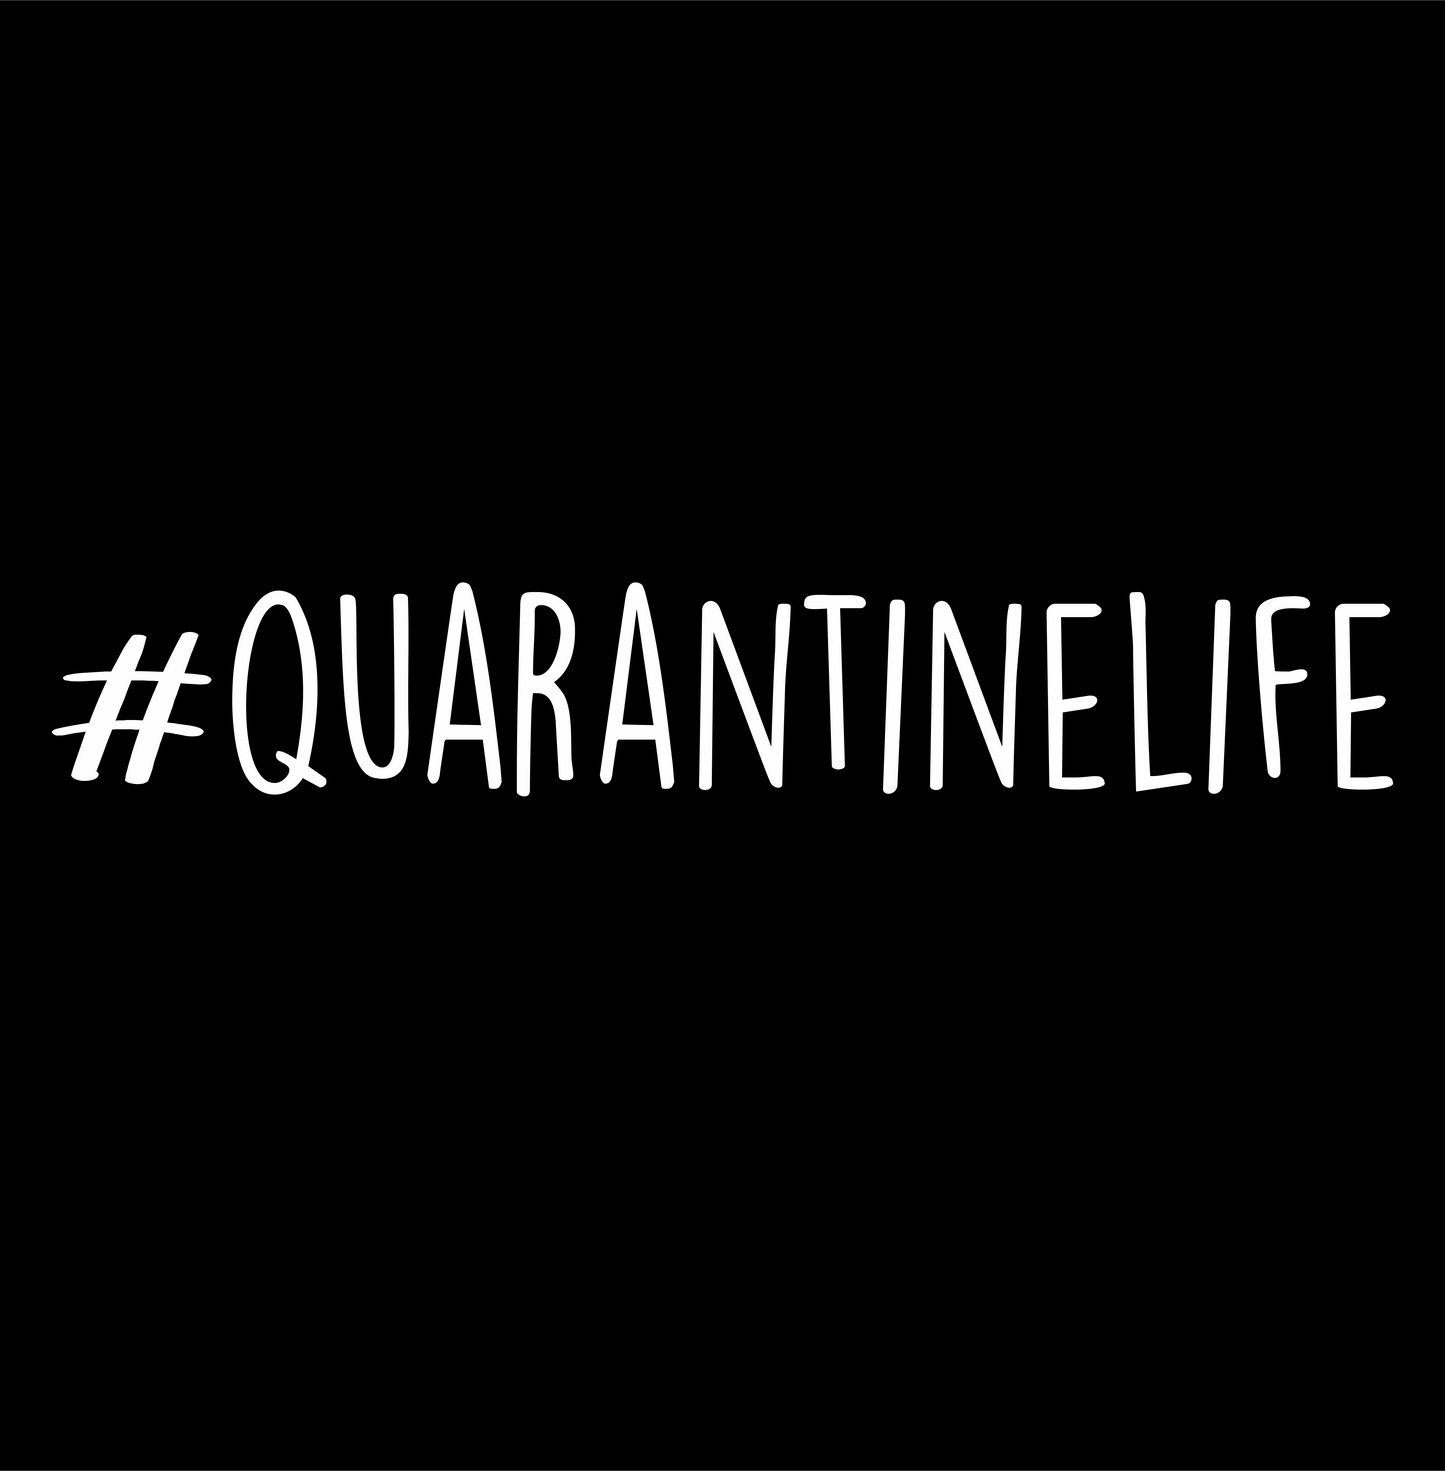 # quarantine life DTG design graphic